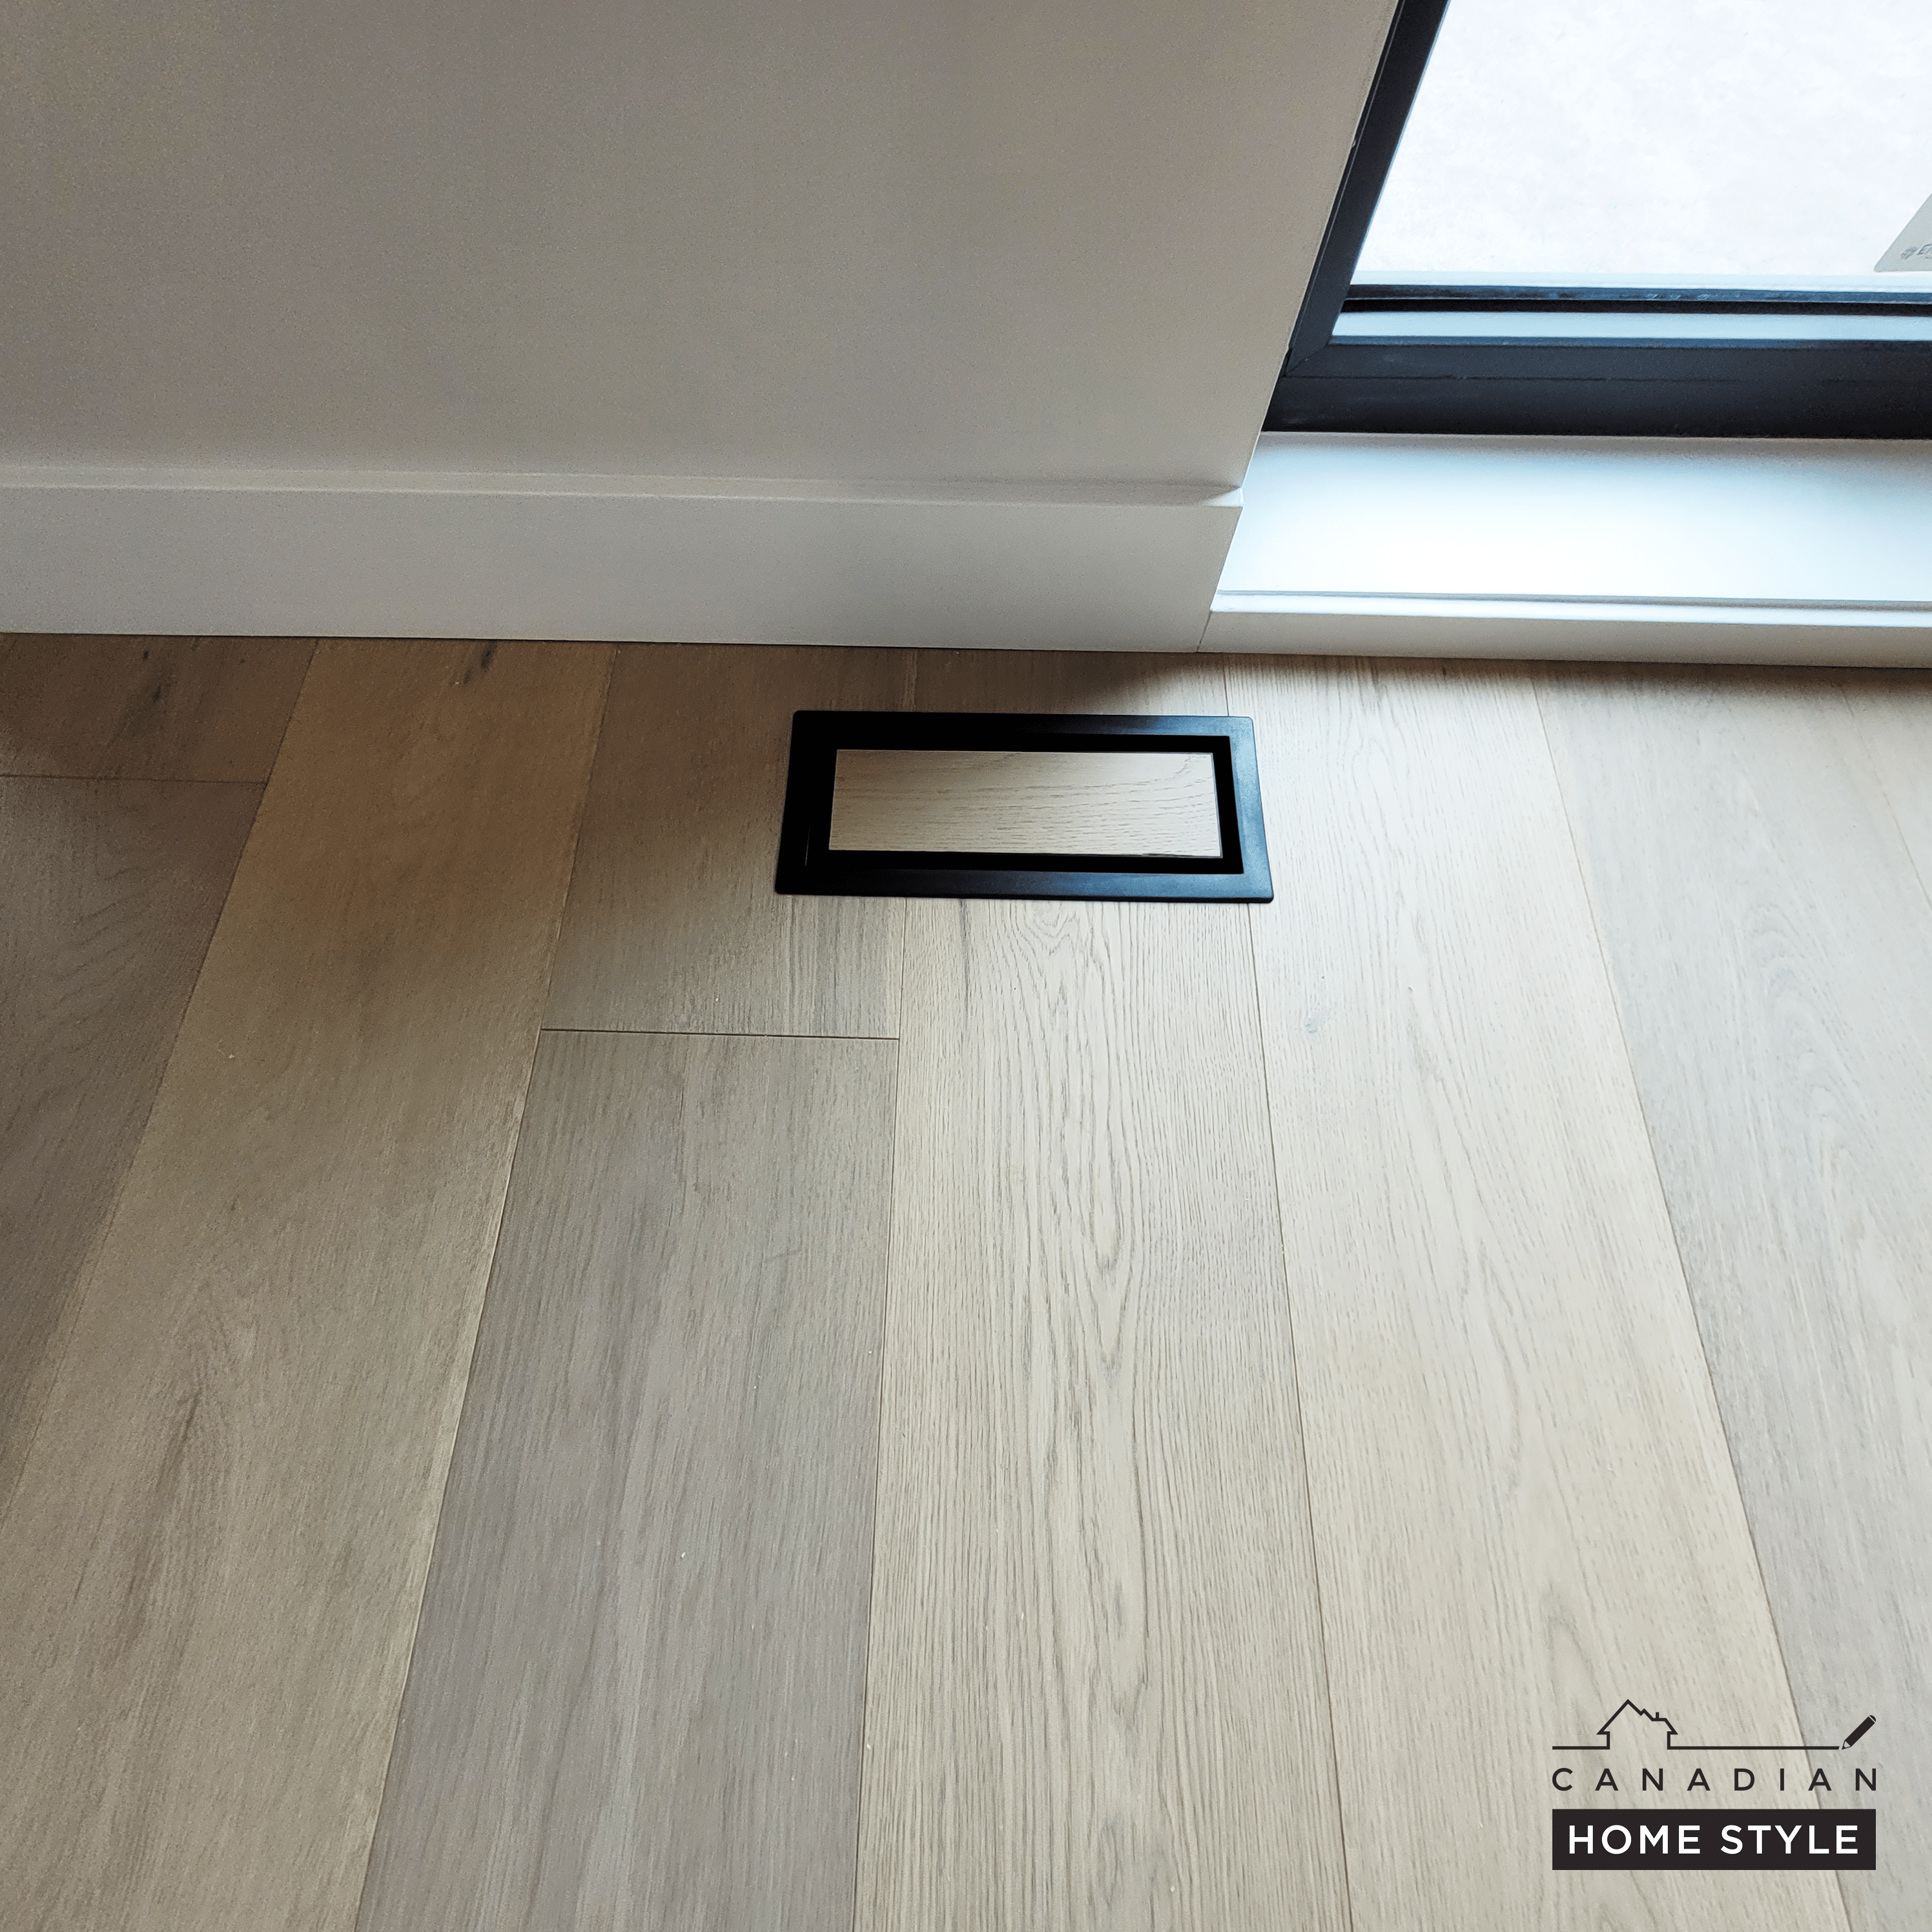 Custom-fit plank hardwood floors in Vancouver